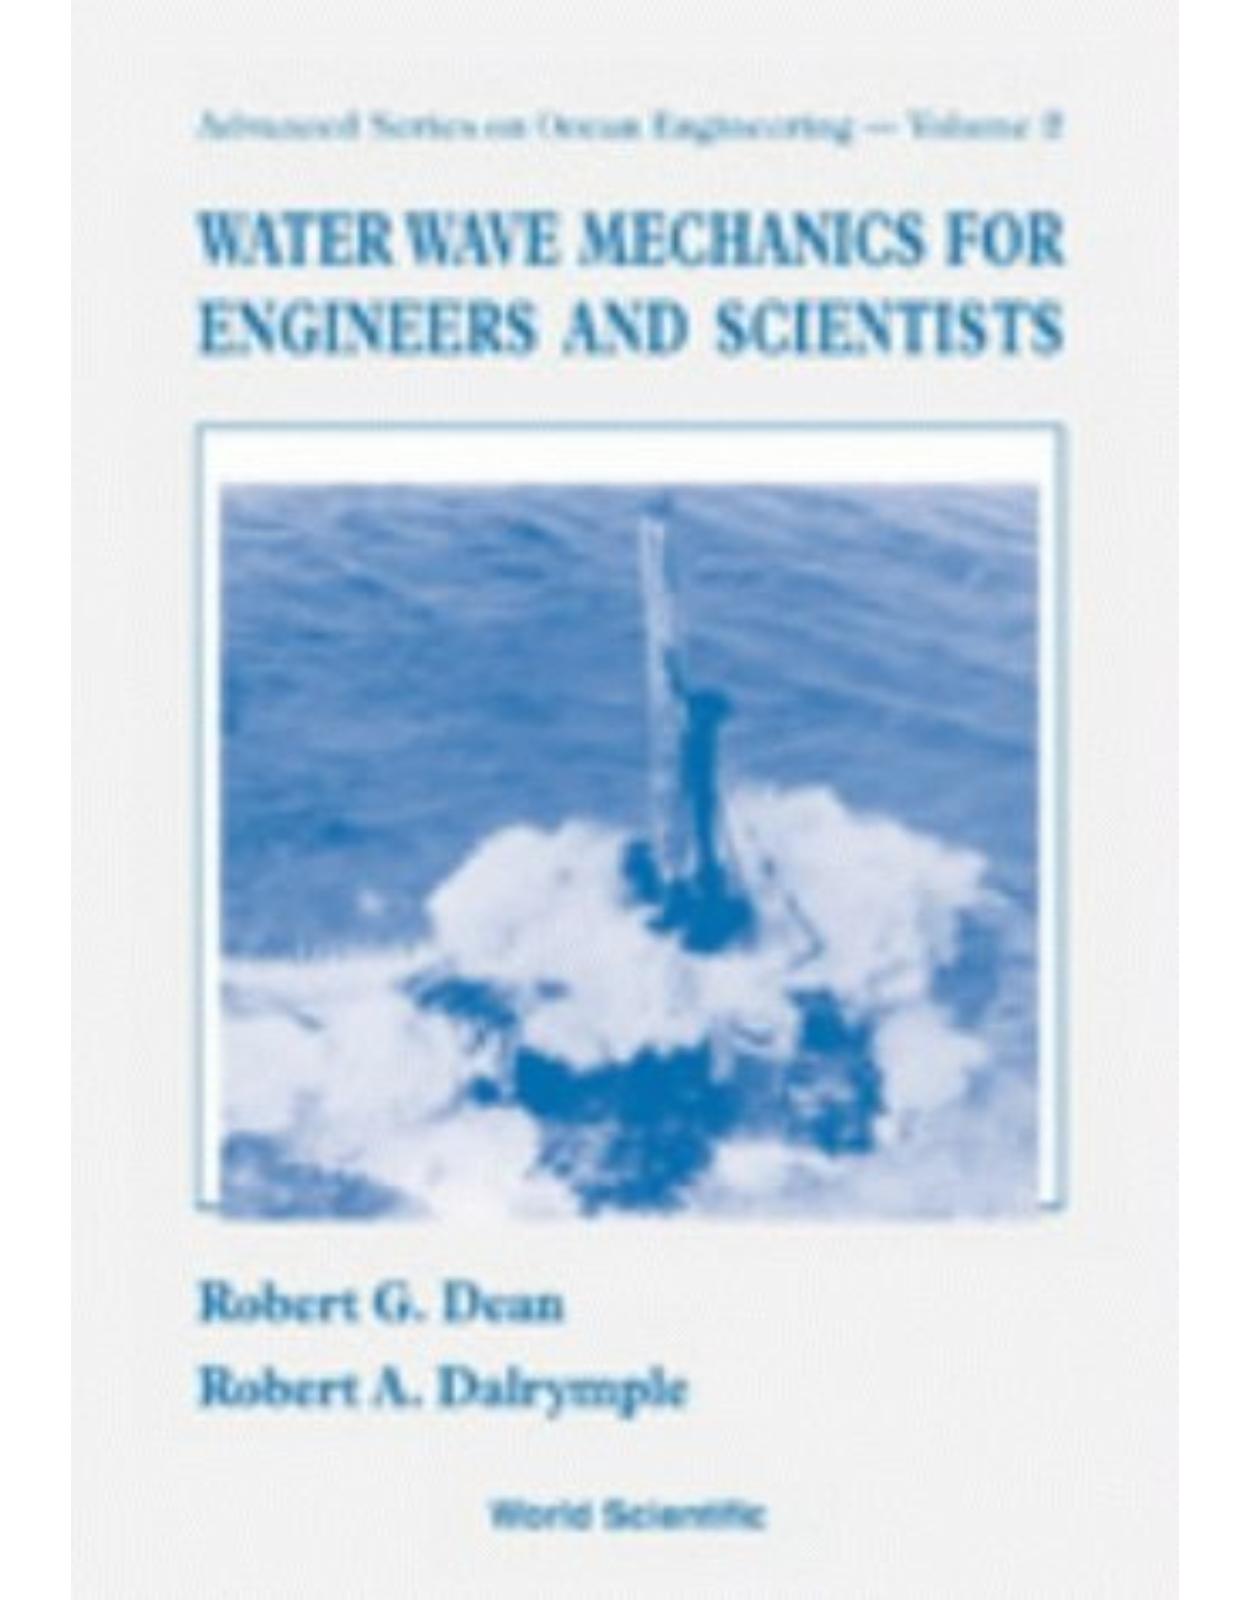 Water Wave Mechanics for Engineers & Scientists (Advanced Series on Ocean Engineering-Vol2)